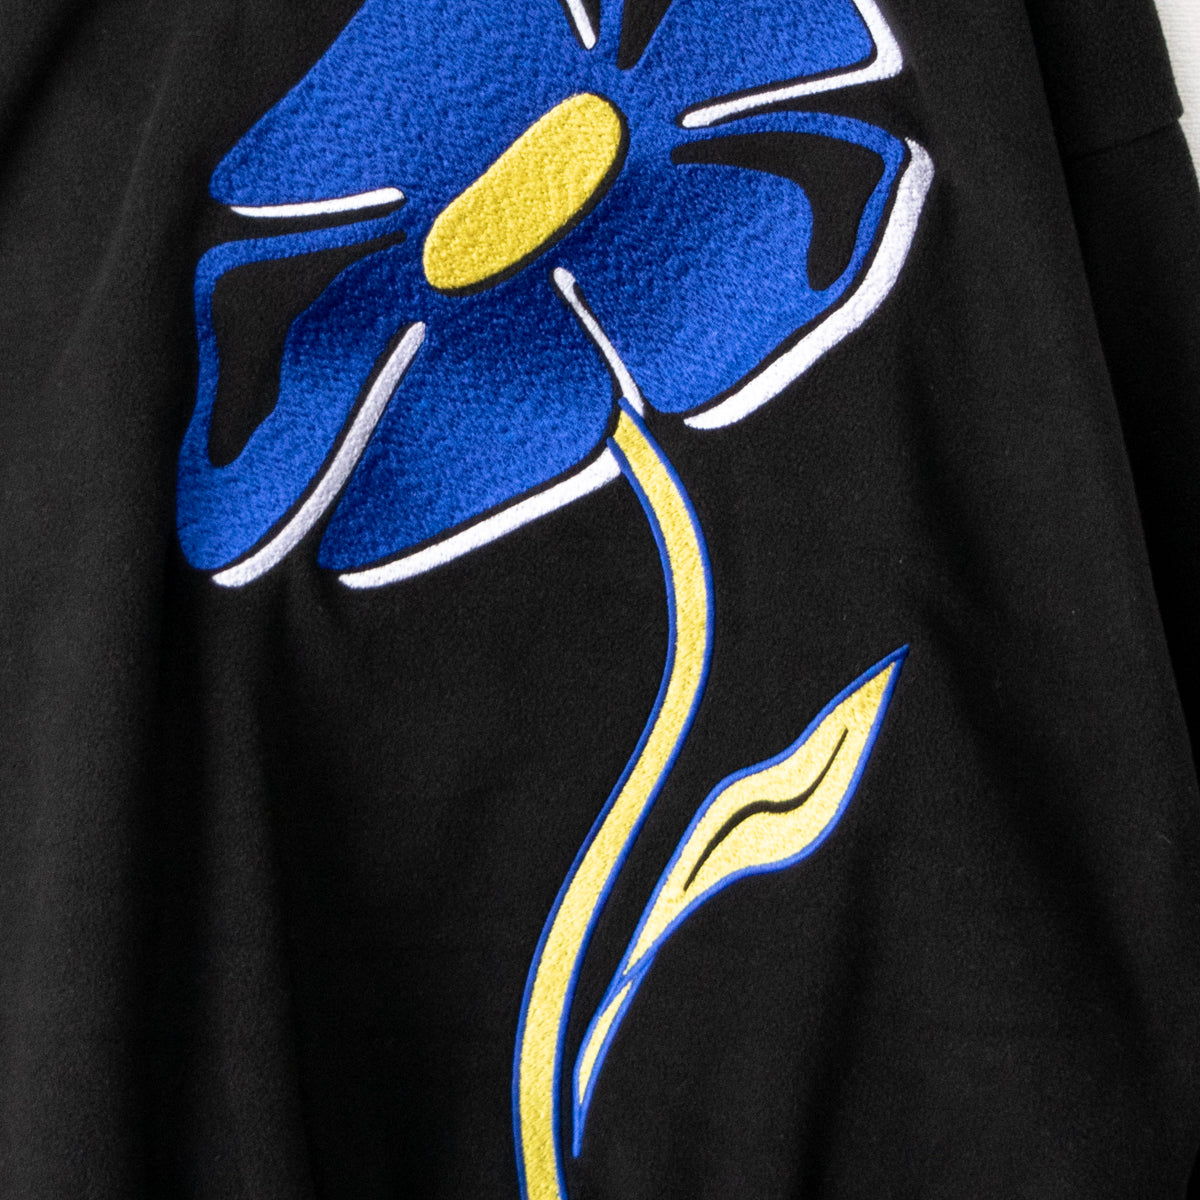 Fleece Flower Embroidery Half Zip Top